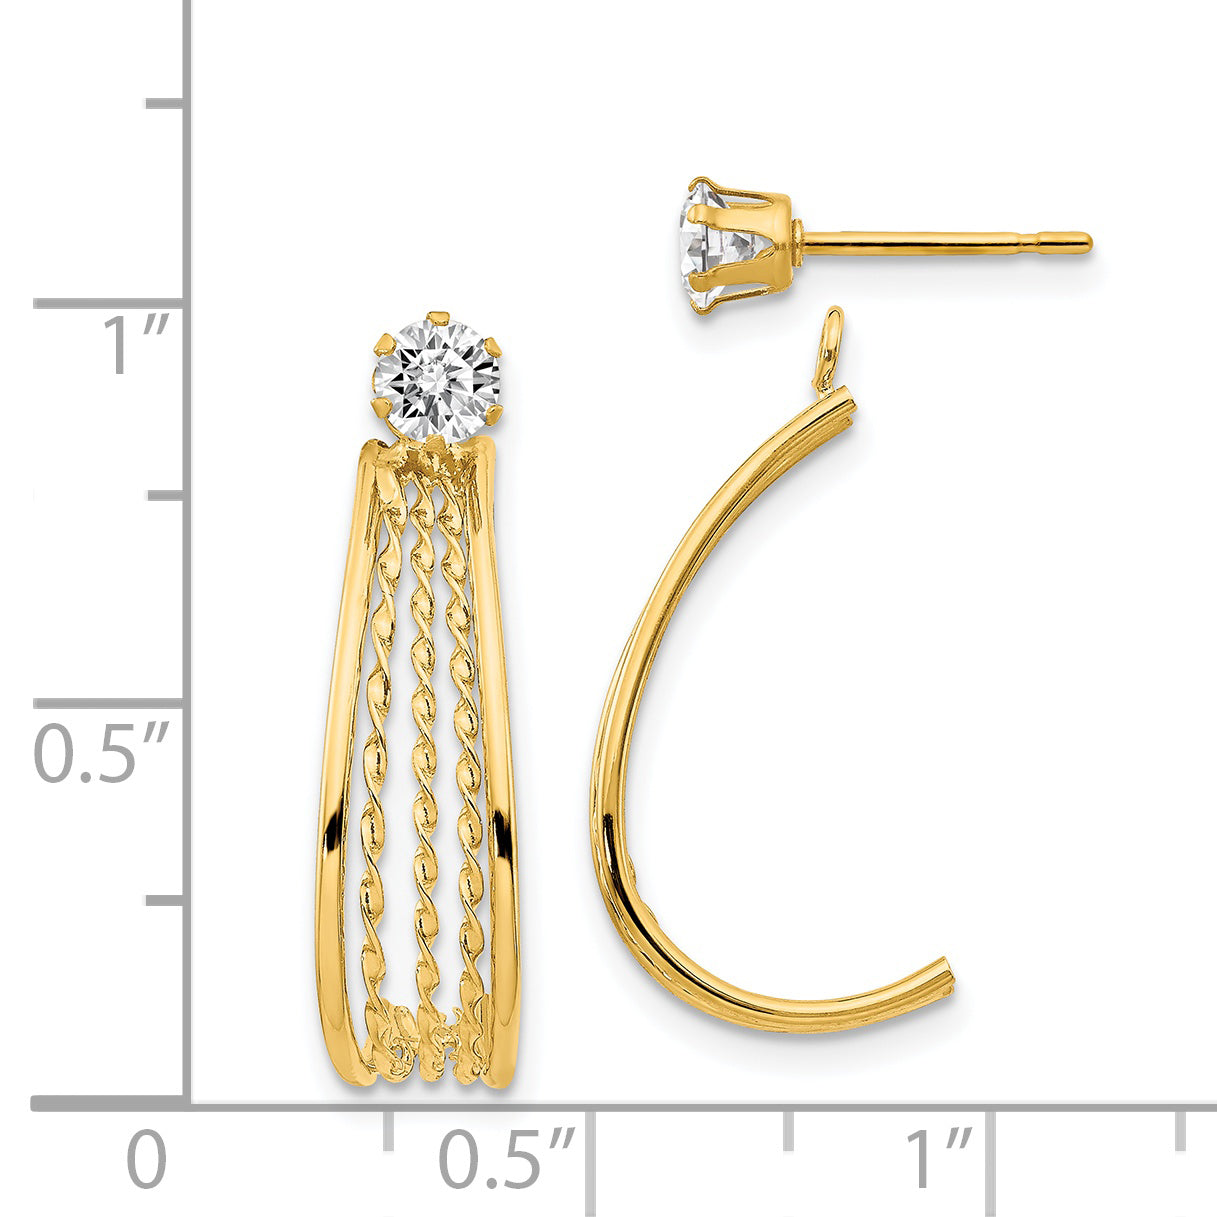 14K Yellow Gold J Hoop Polished w/CZ Stud Earrings